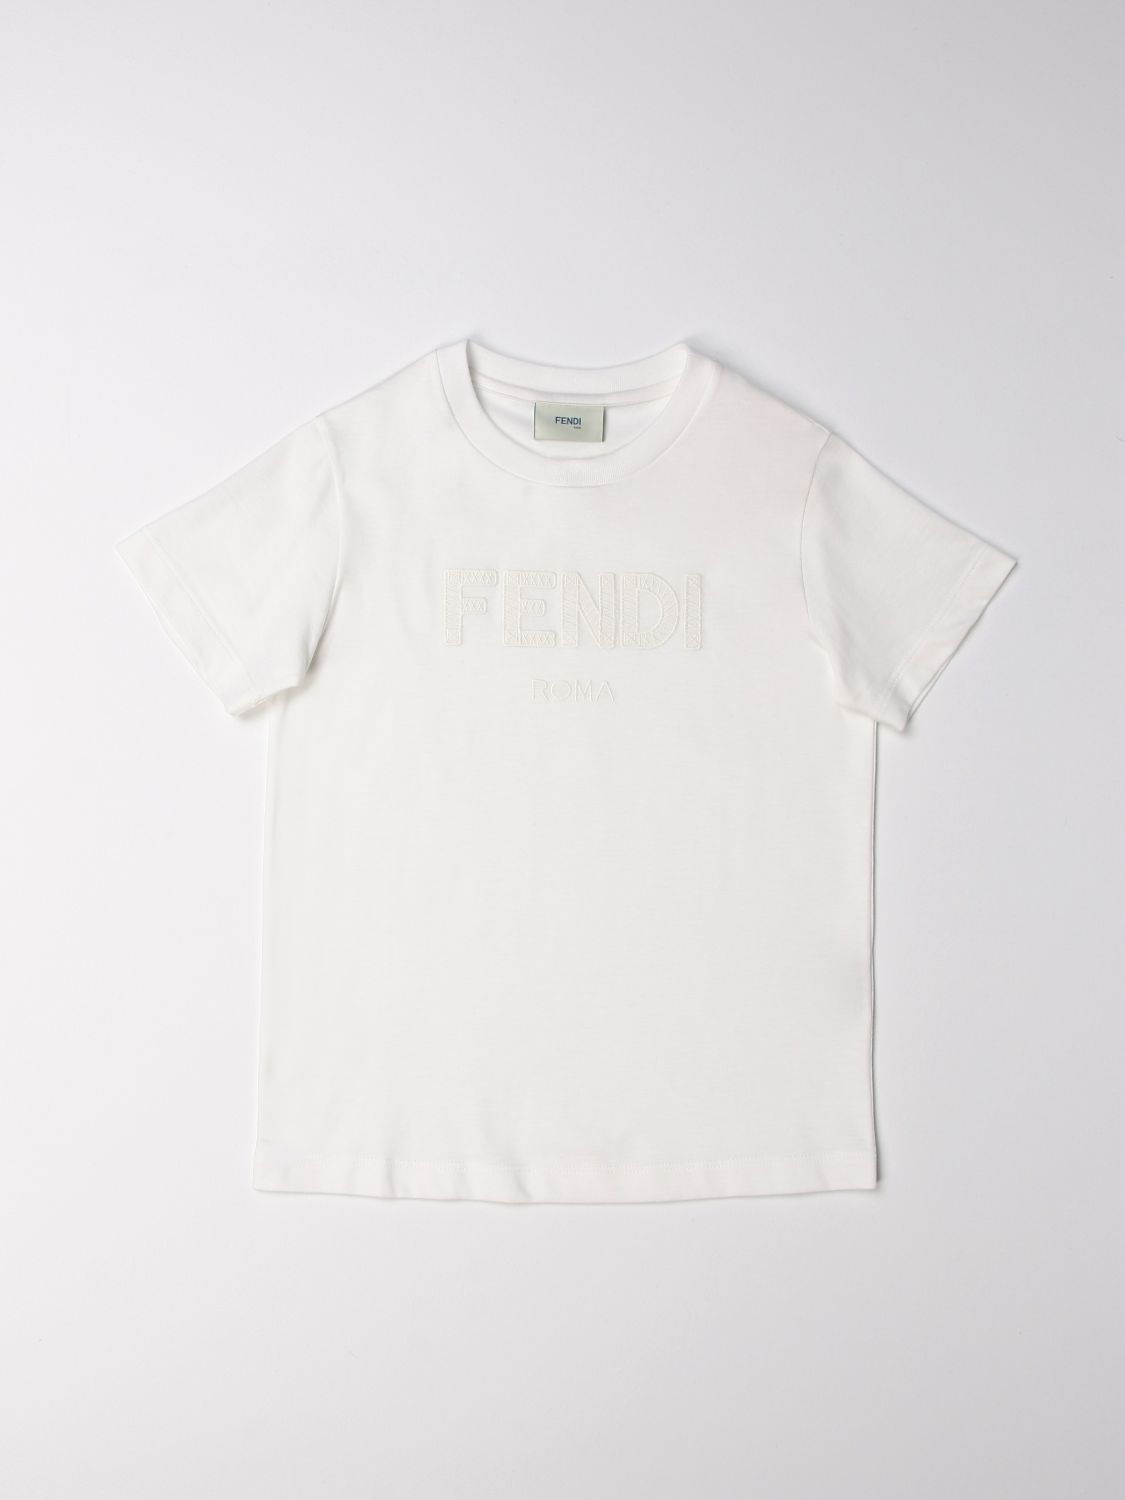 FENDI T-Shirts for Kids | ModeSens